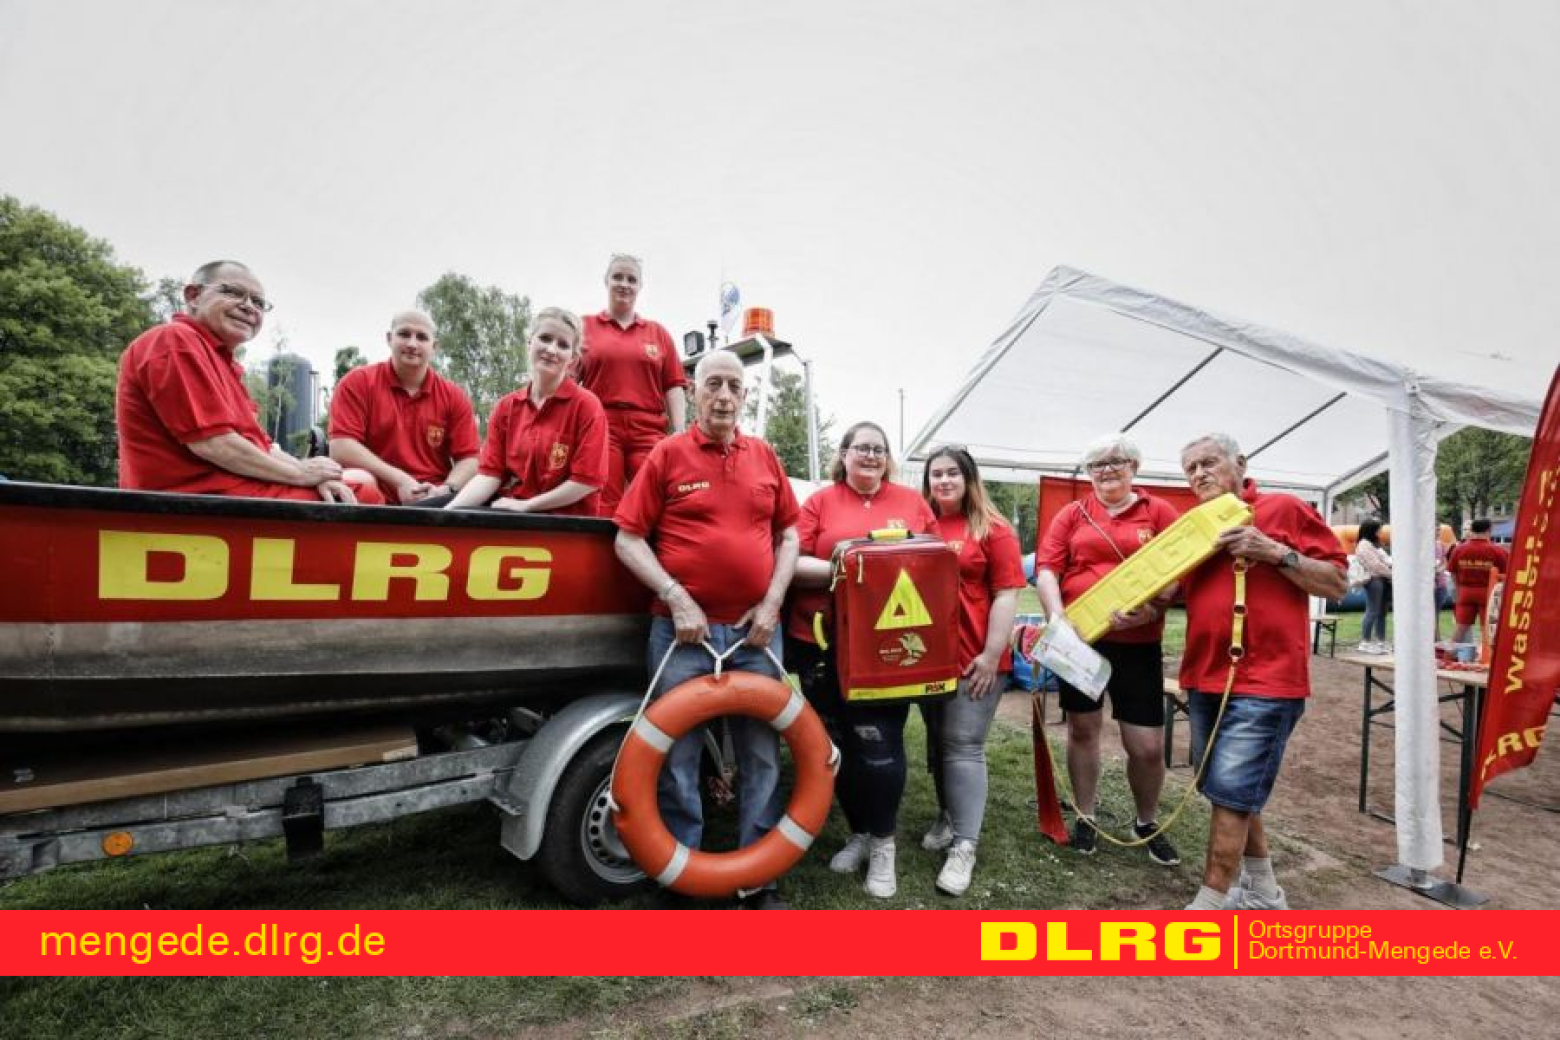 Team des DLRG Ortsgruppe Dortmund Mengede e.V.